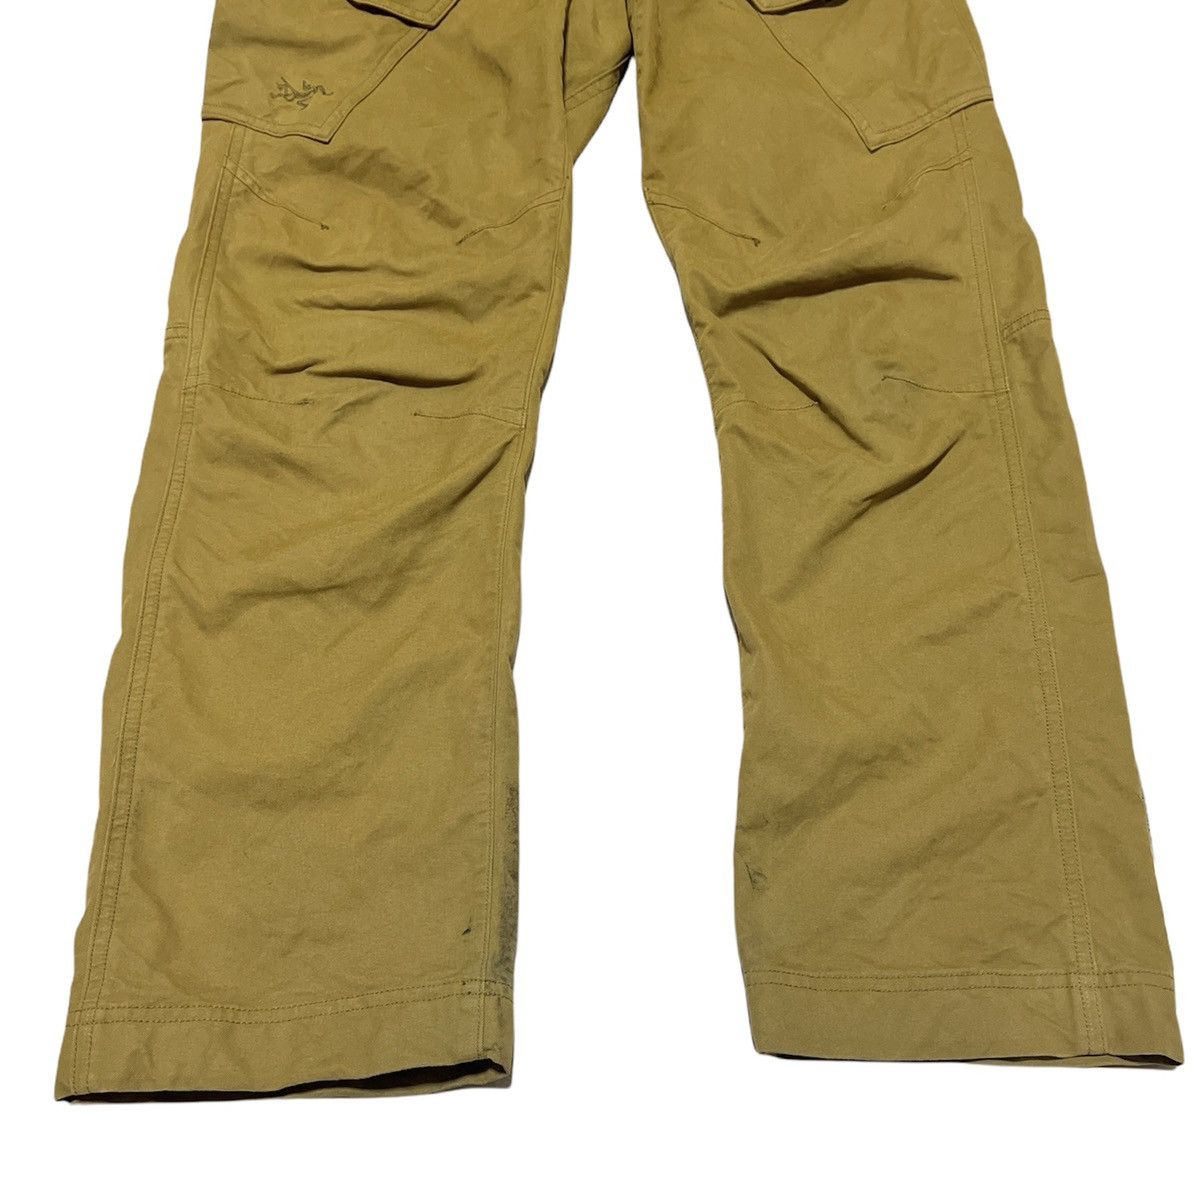 Arcteryx Cargo pants - 10